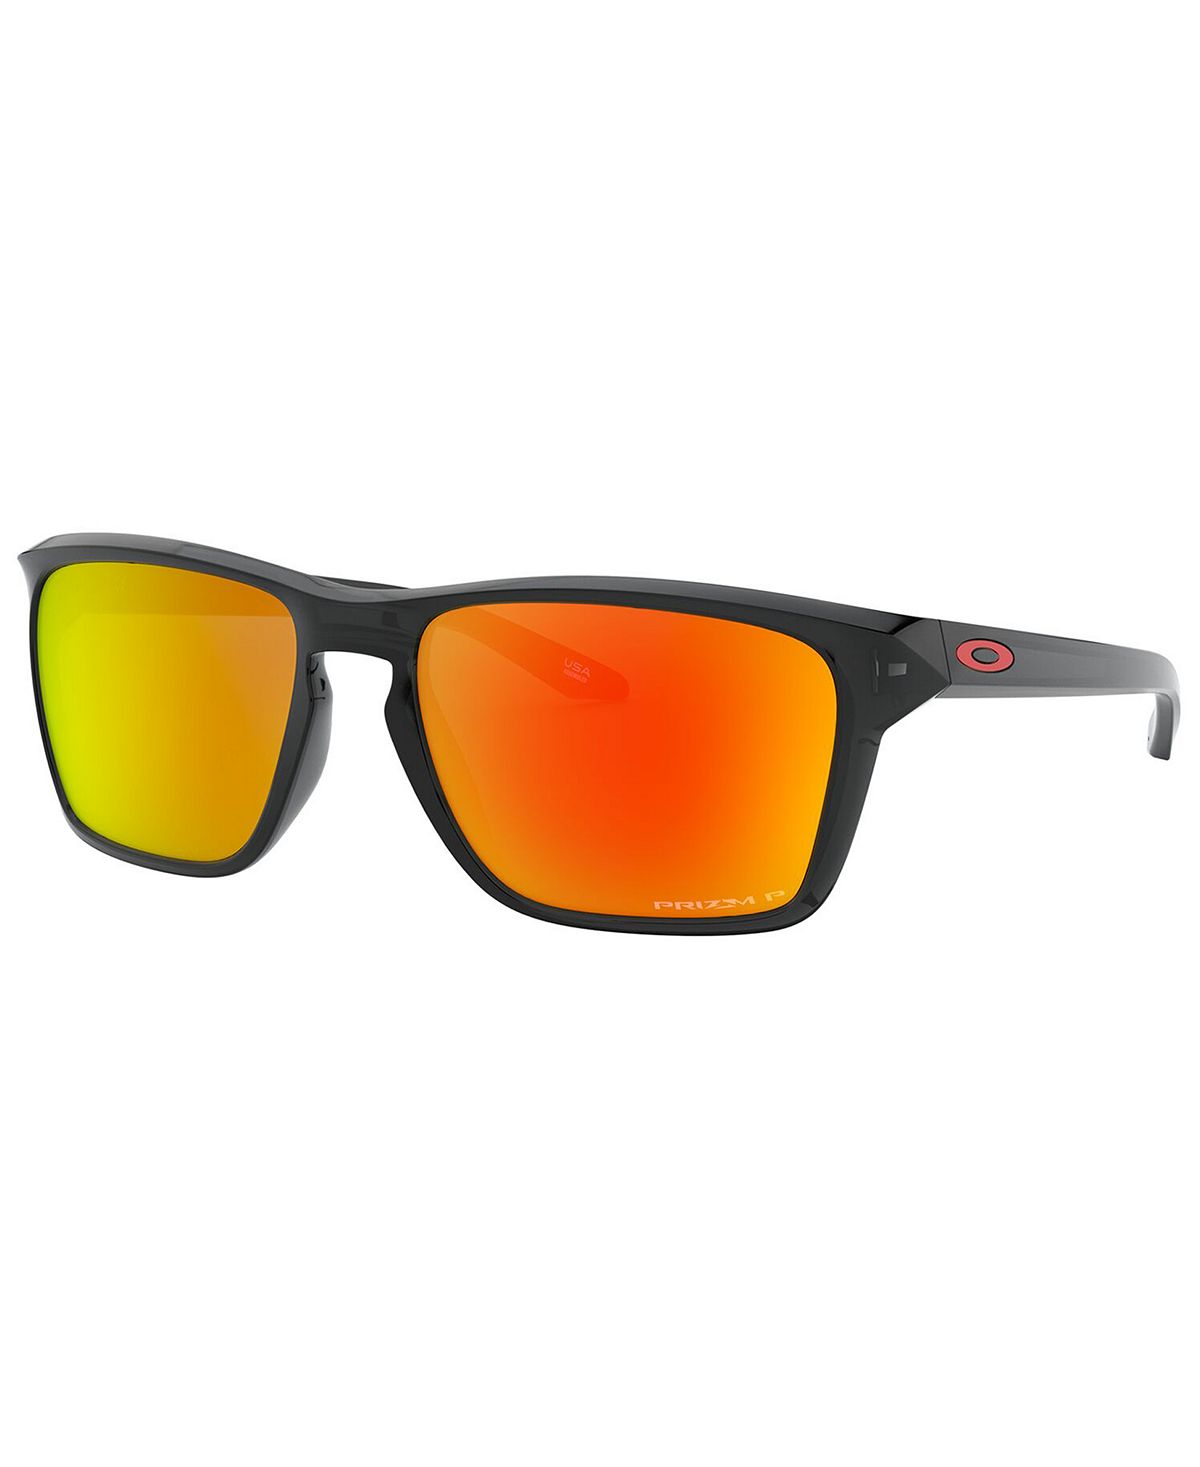 поляризационные солнцезащитные очки oo9448 57 sylas oakley Поляризованные солнцезащитные очки, oo9448 57 sylas Oakley, мульти